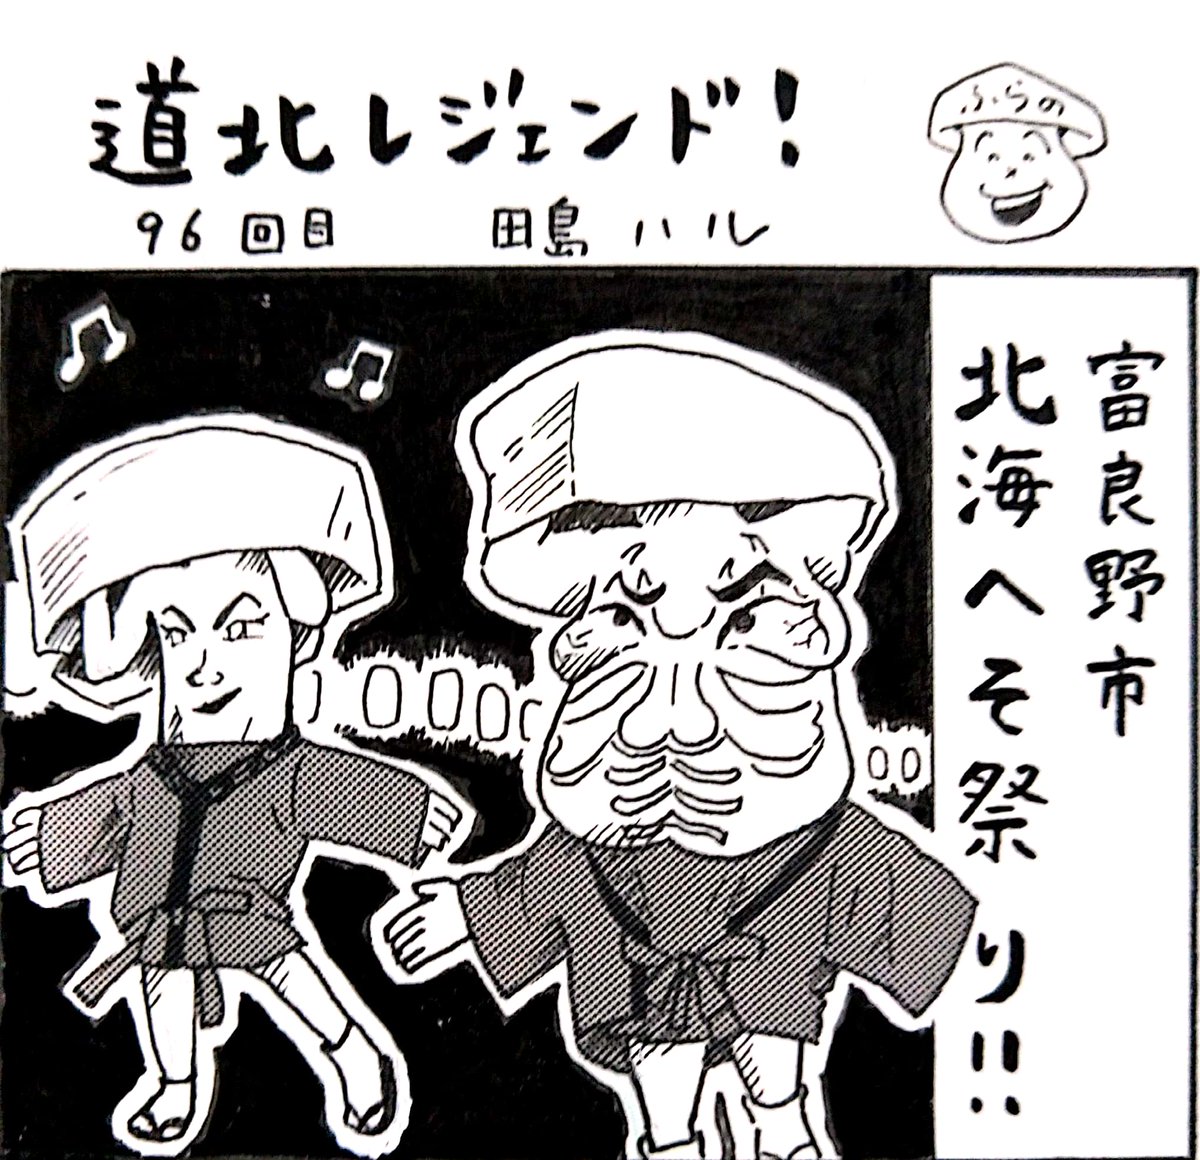 本日9日の北海道新聞夕刊旭川面に漫画 #道北レジェンド !載ってます。富良野市の北海へそ祭りは今年開催中止…ということで、僭越ながら漫画上で盛り上げてみました。 